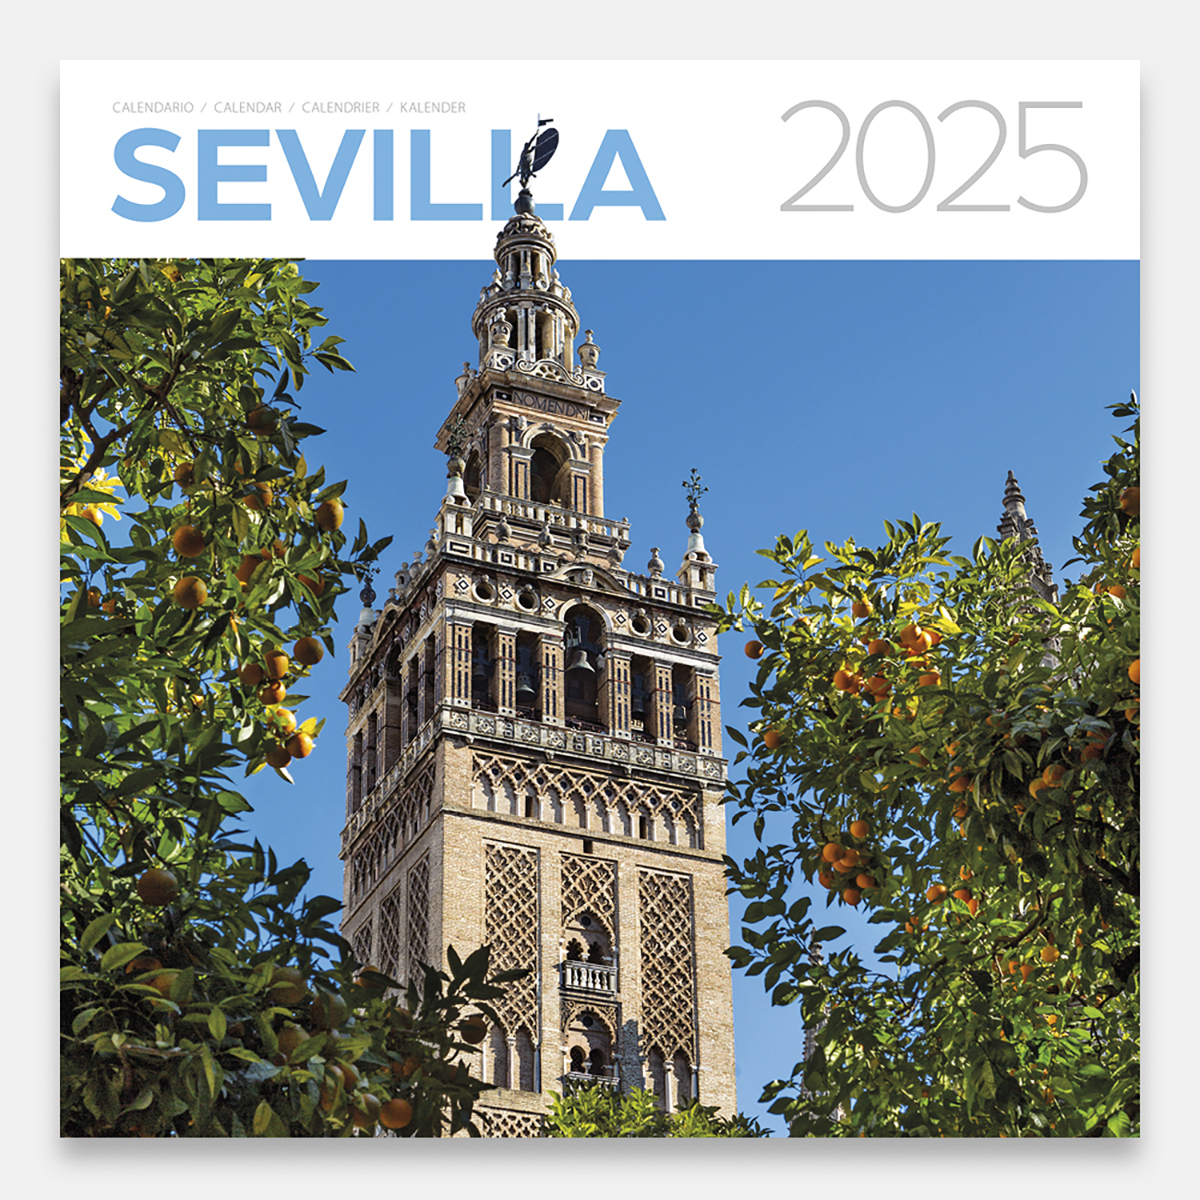 Calendrier 2025 Sevilla 25sg calendario pared 2025 sevilla